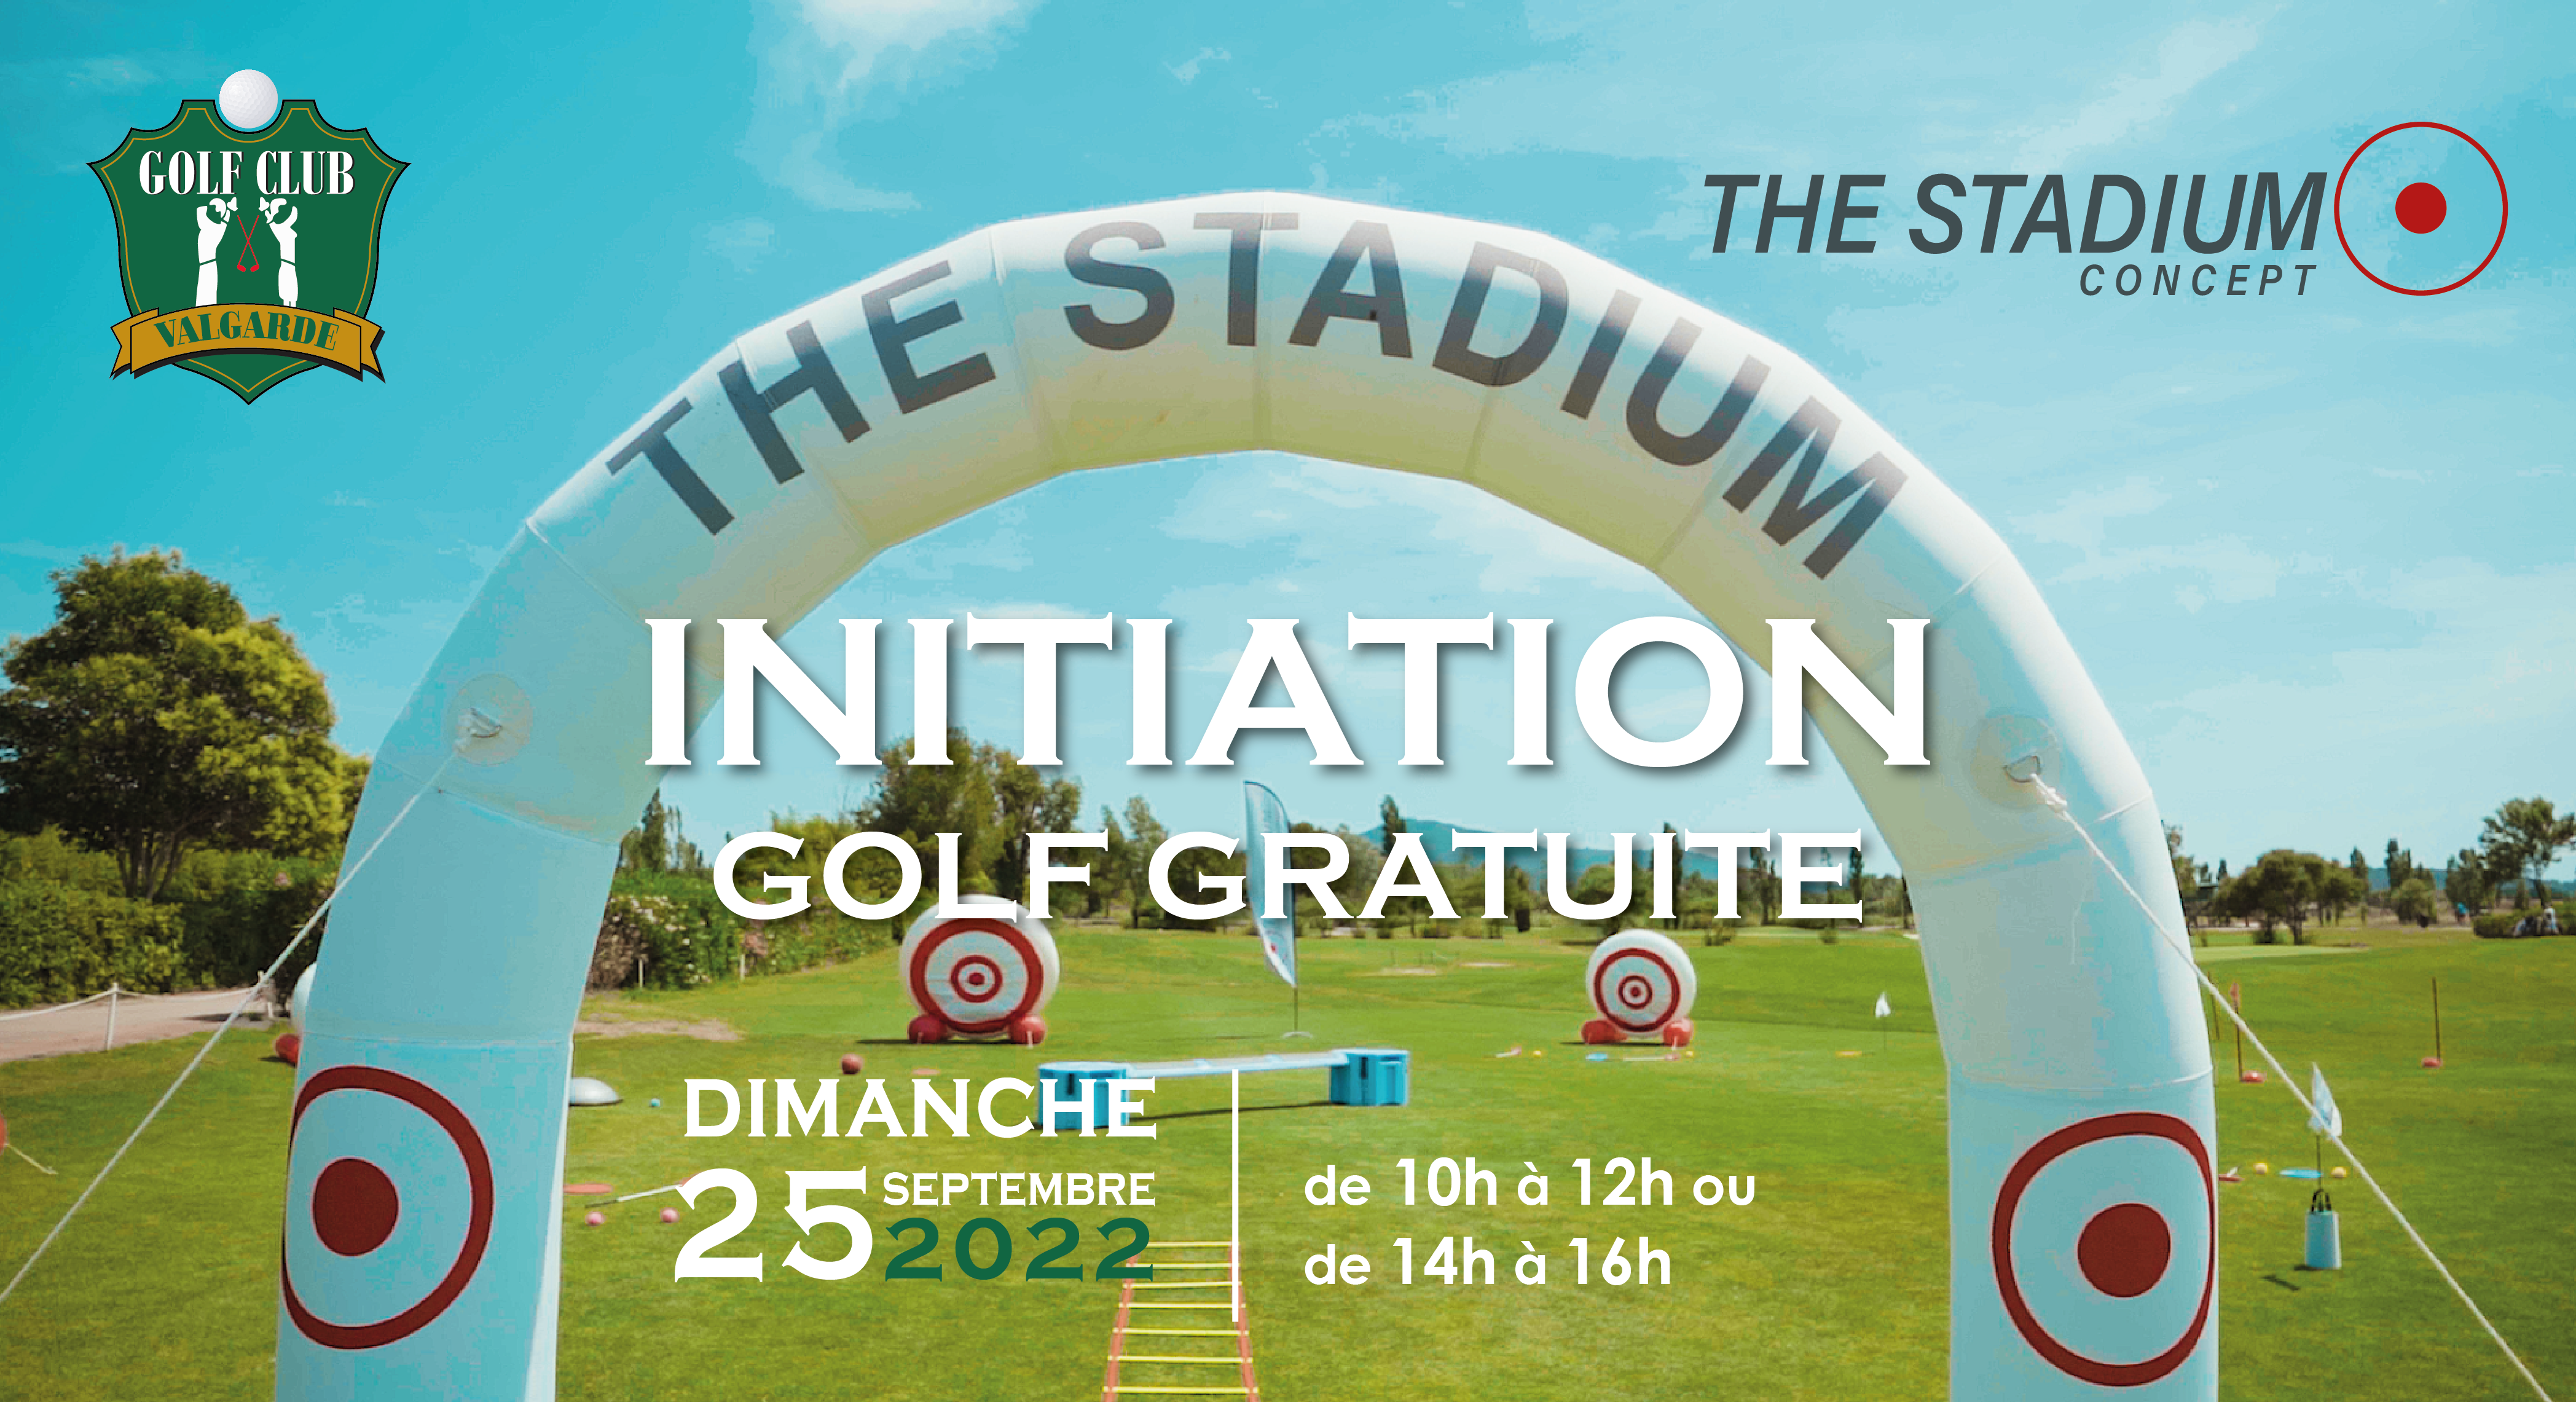 Initiation gratuite au golf – dimanche 25 septembre 2022